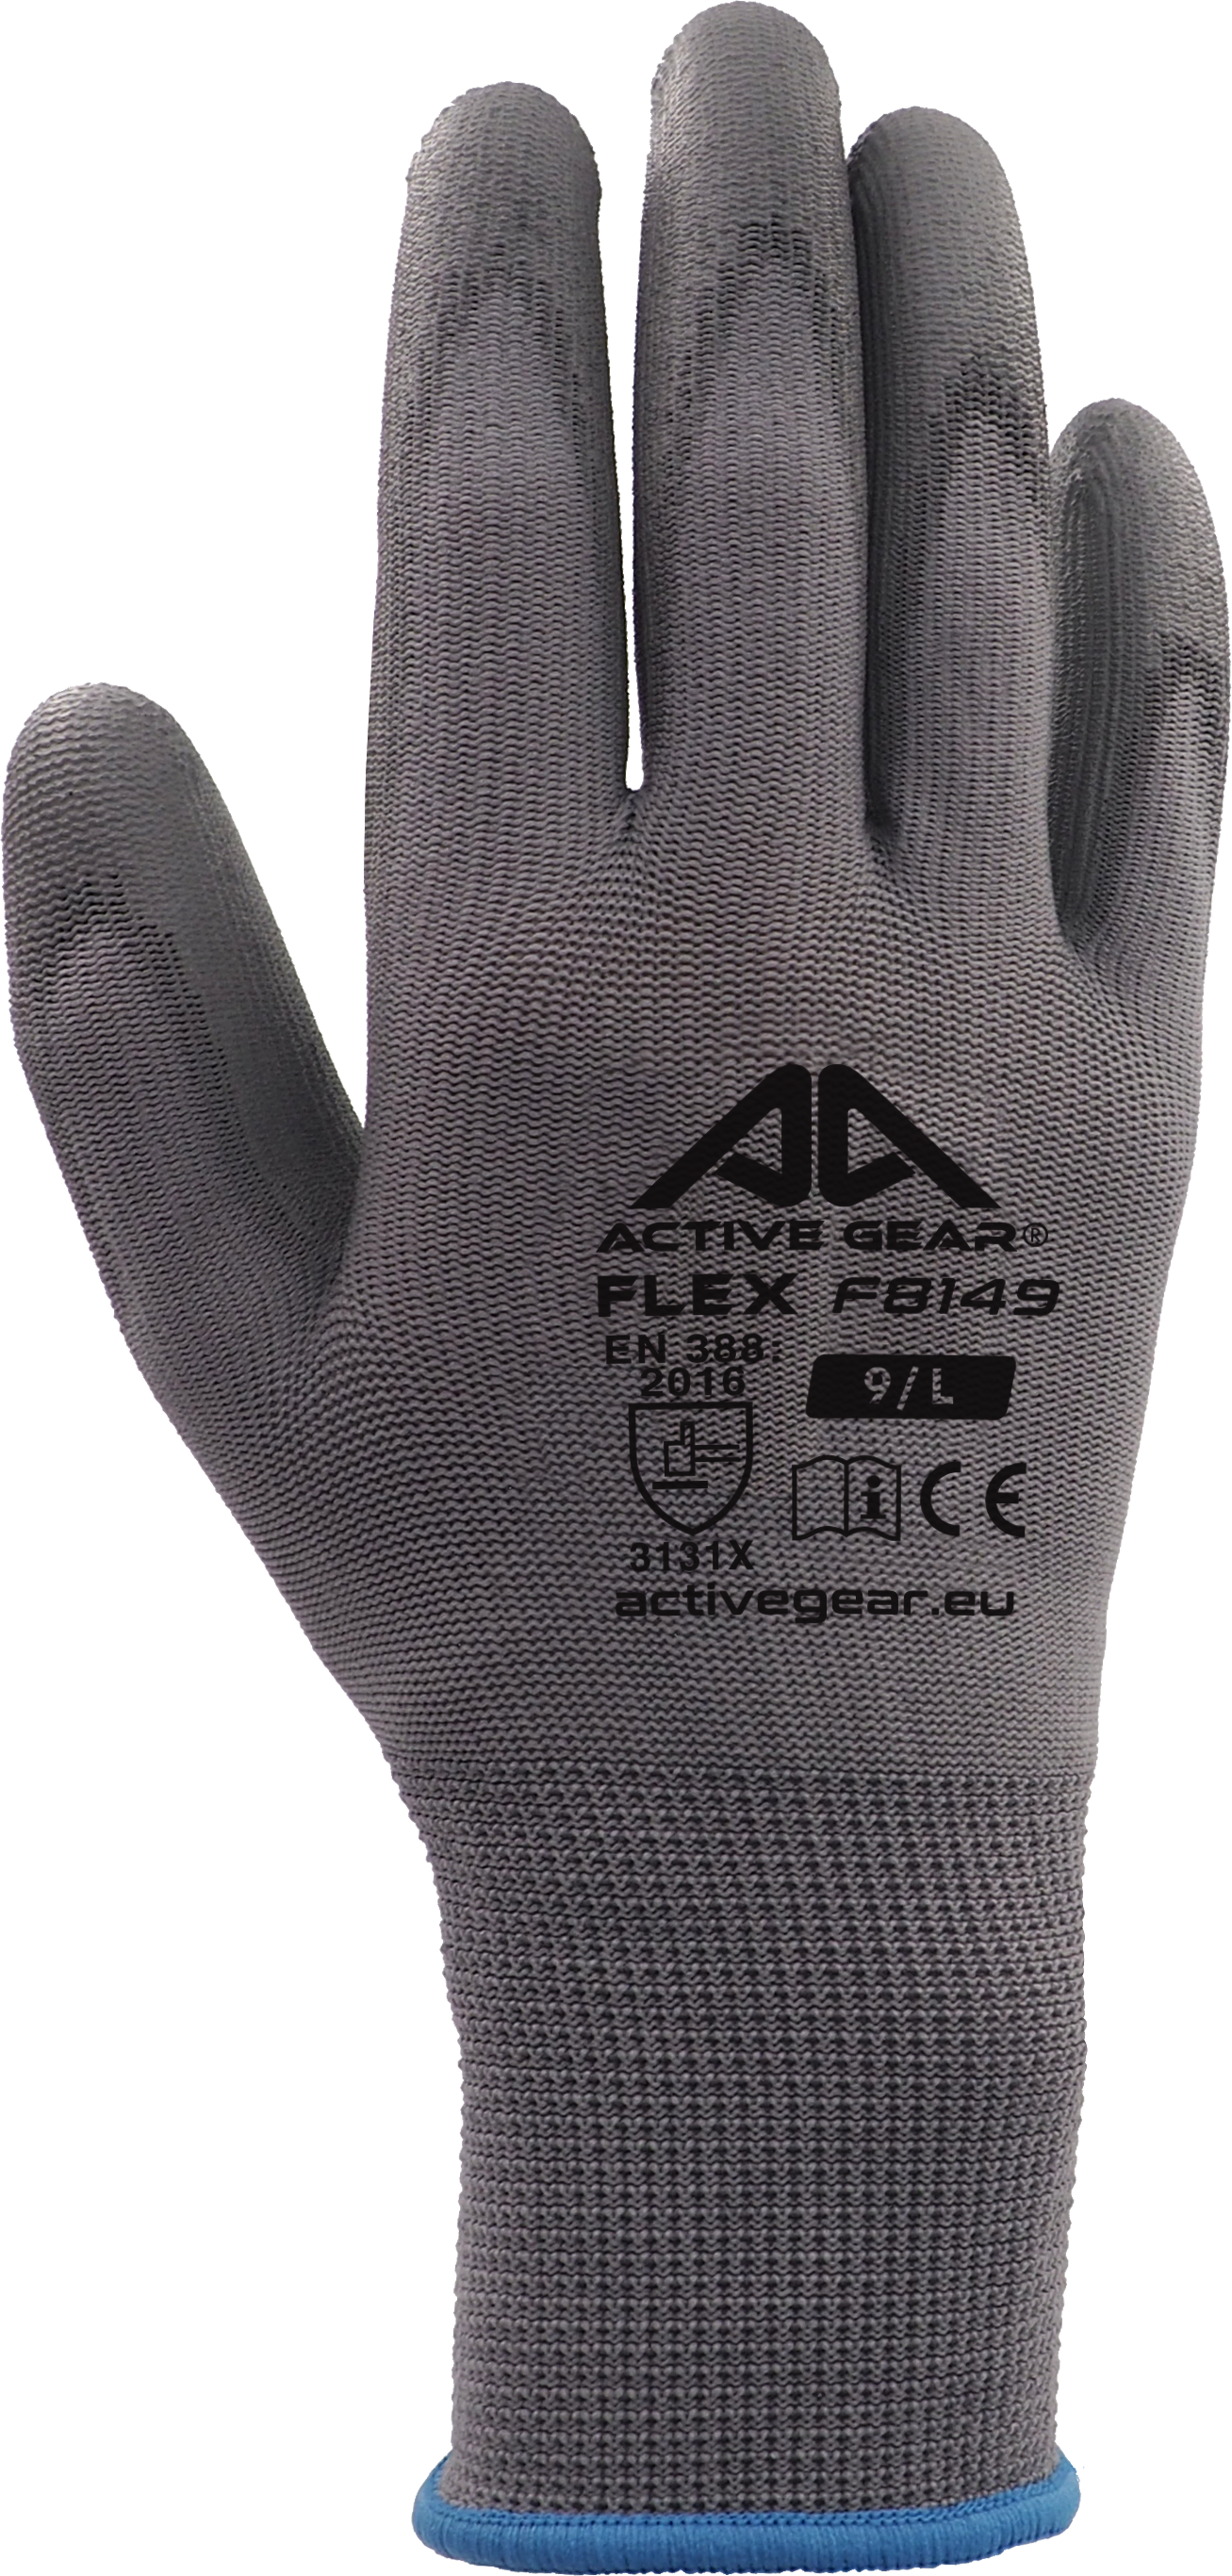 Active FLEX F8150